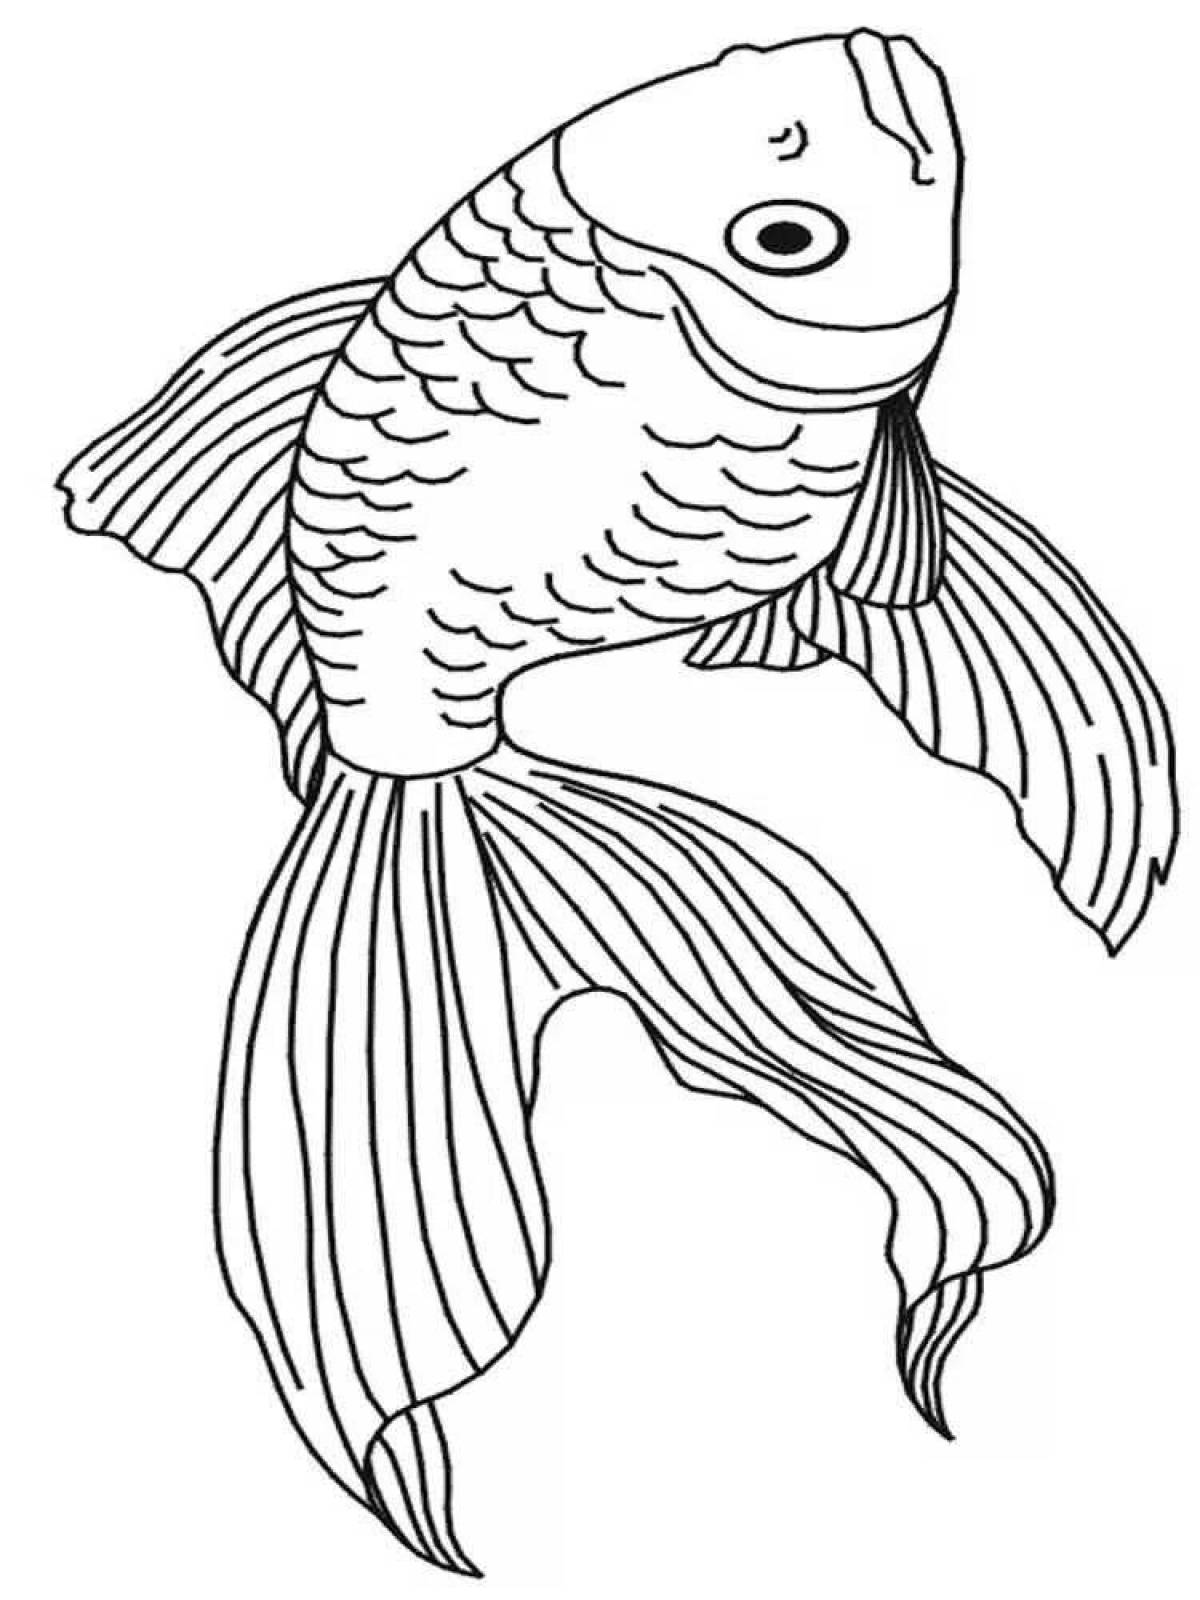 Радостный рисунок золотой рыбки